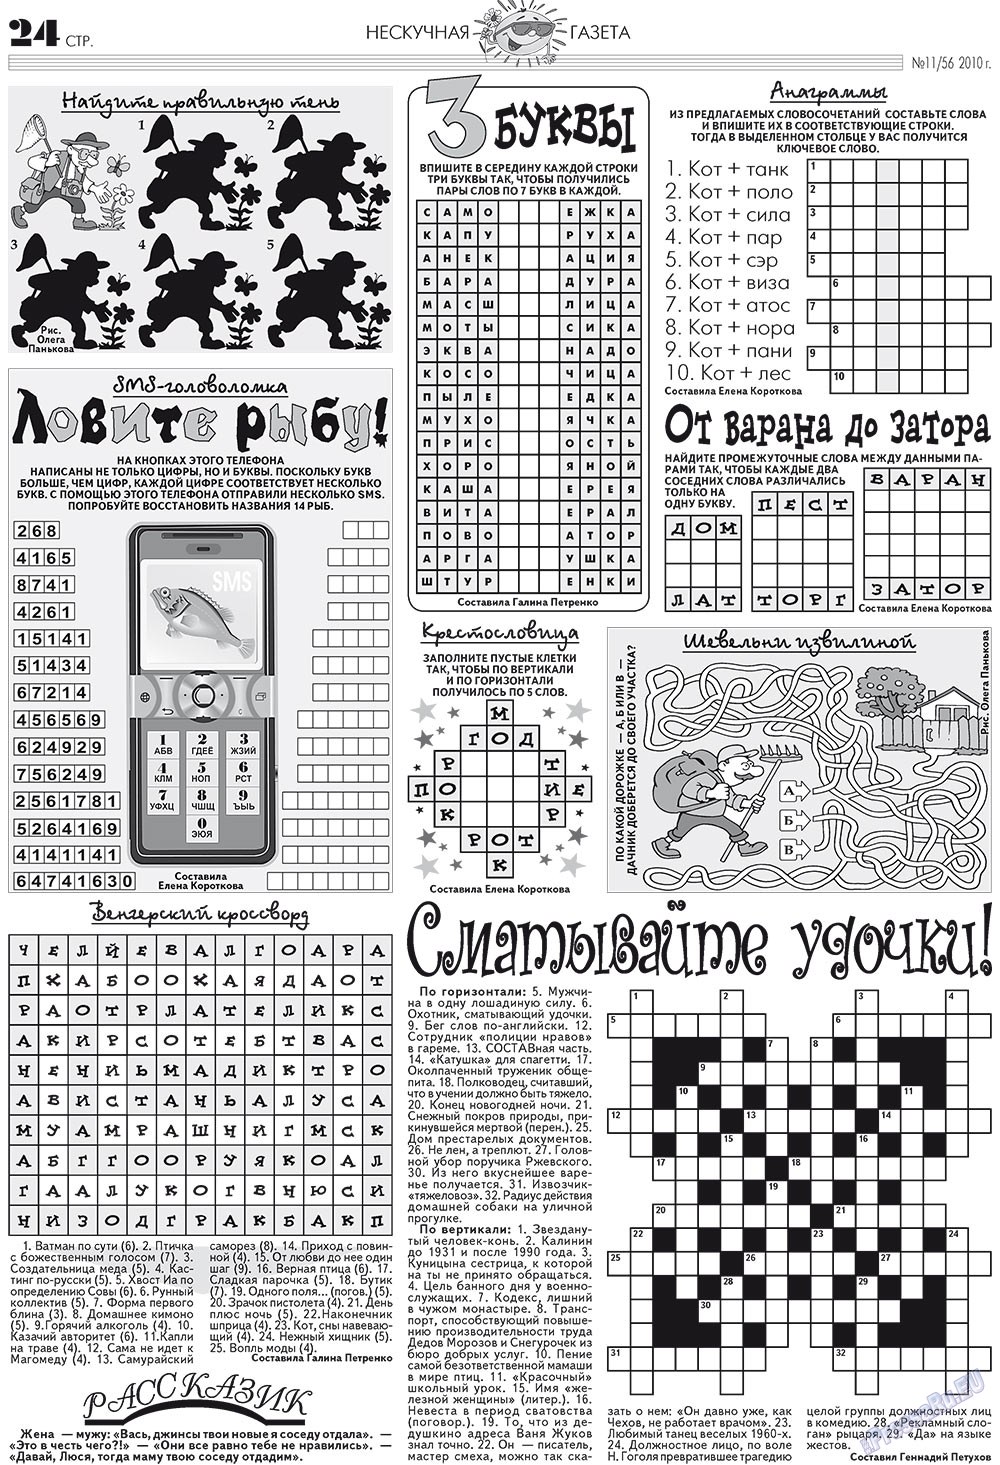 Нескучная газета, журнал. 2010 №11 стр.20